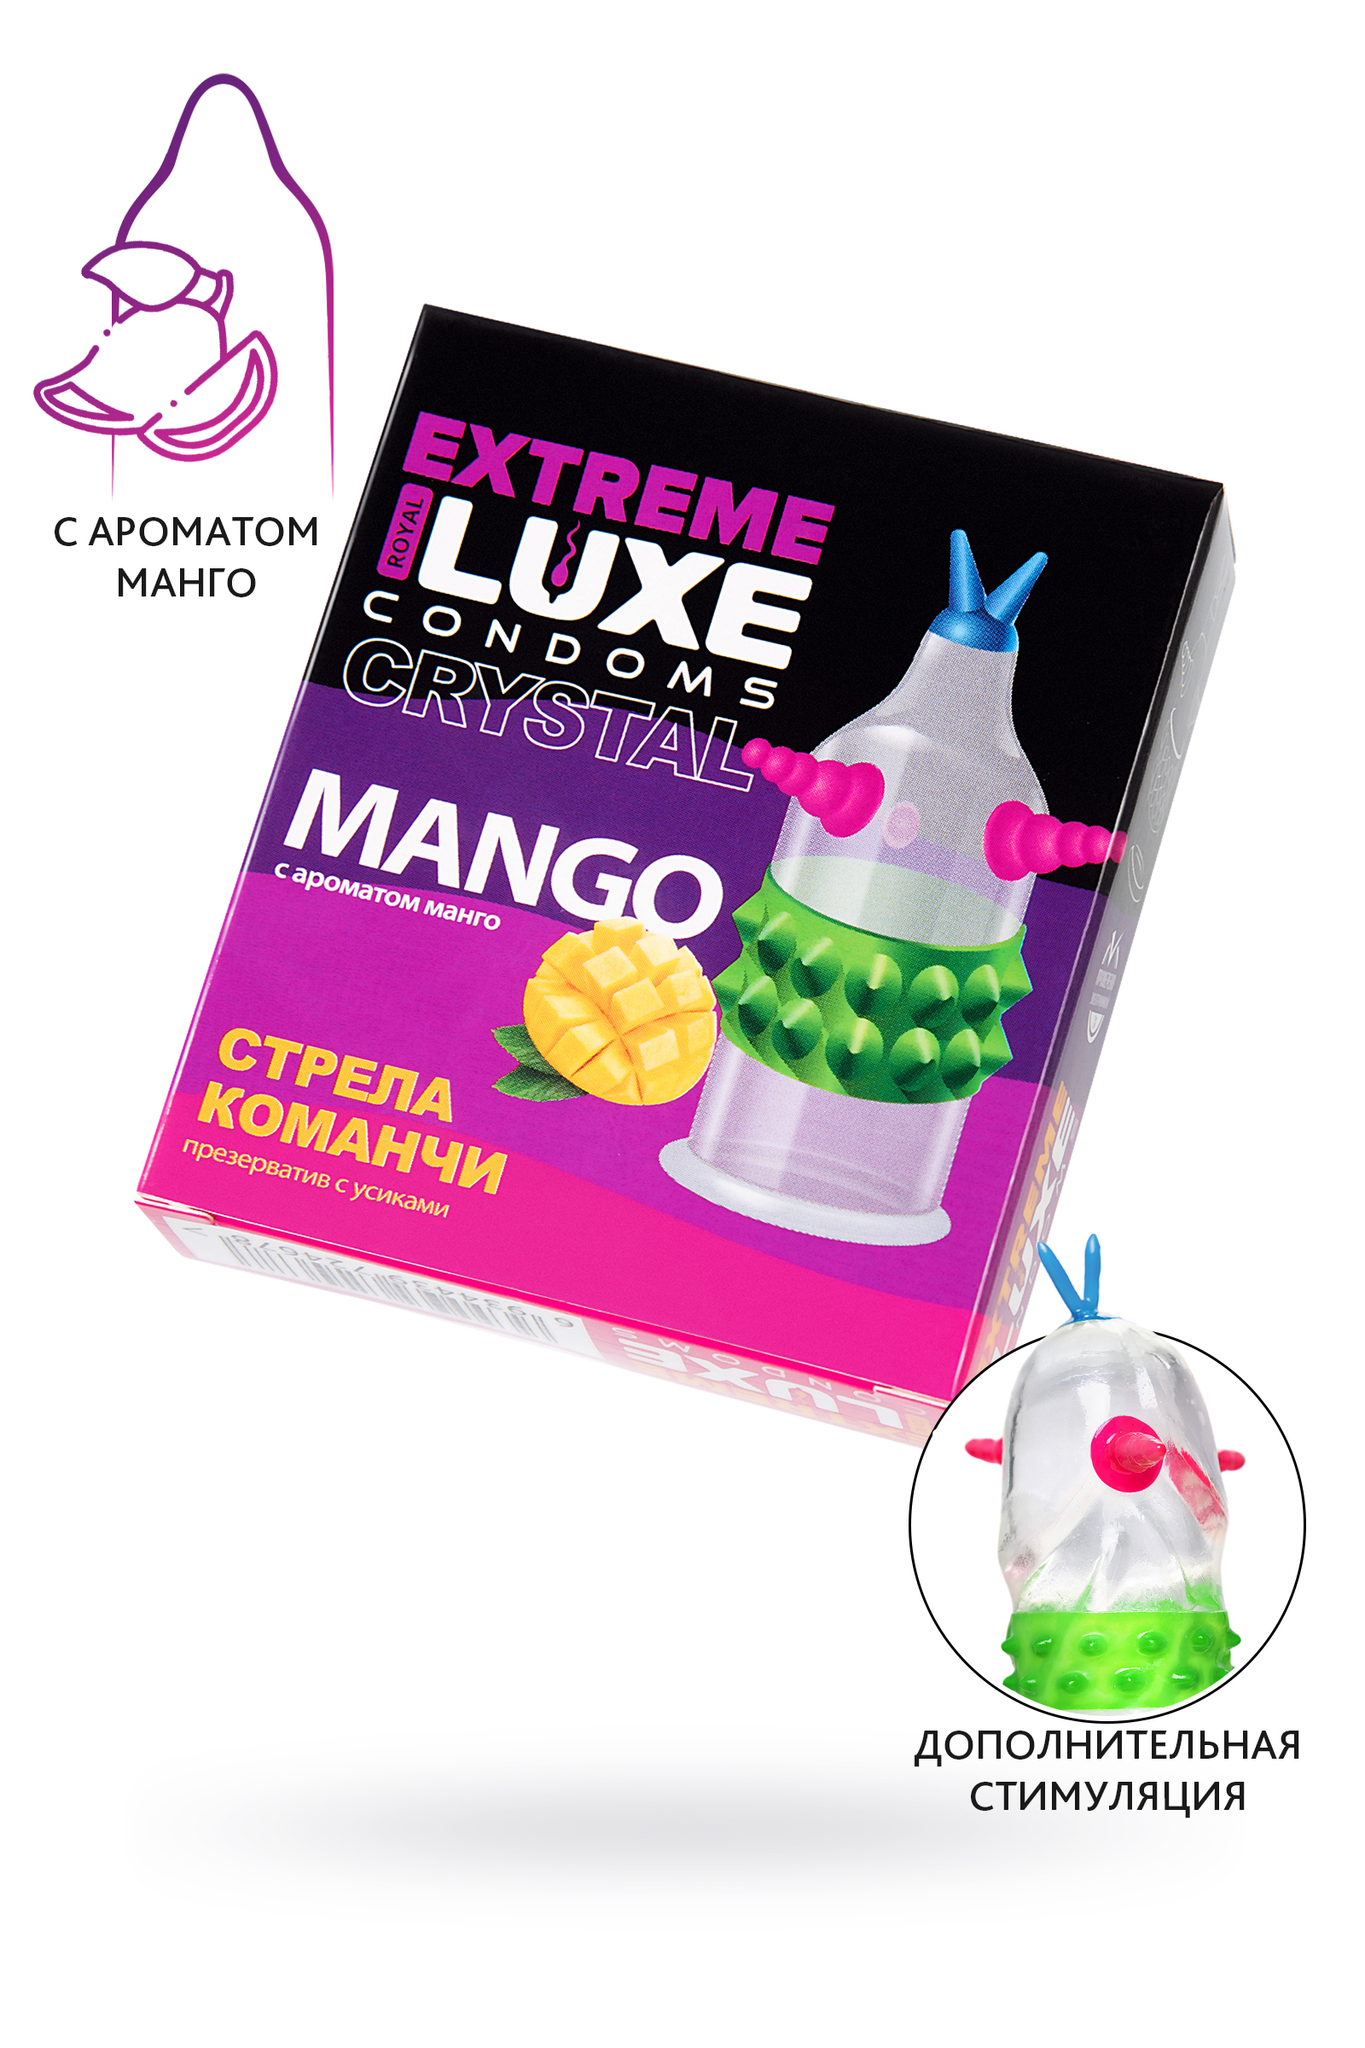 Презервативы Luxe, extreme, «Стрела команчи», манго, 18 см, 5,2 см, 1 шт. фото